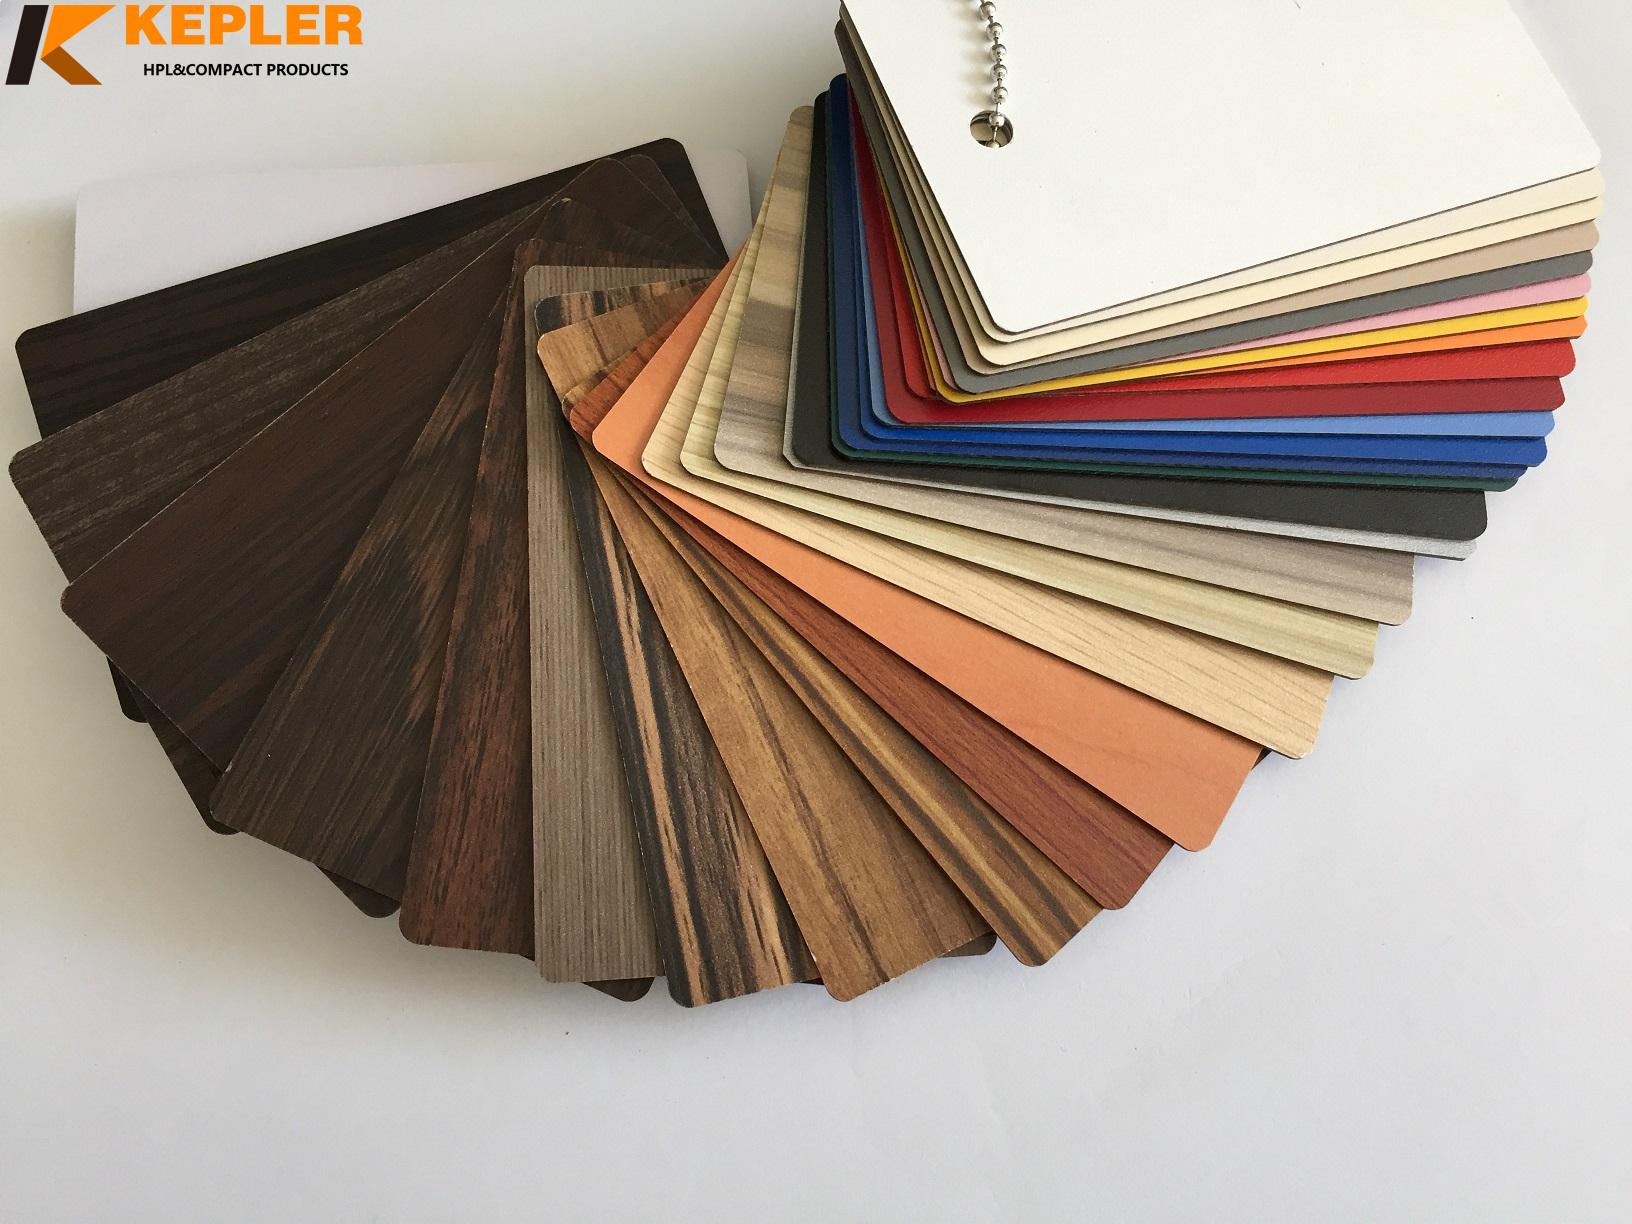 Kepler wood grain furniture high pressure laminate sheets